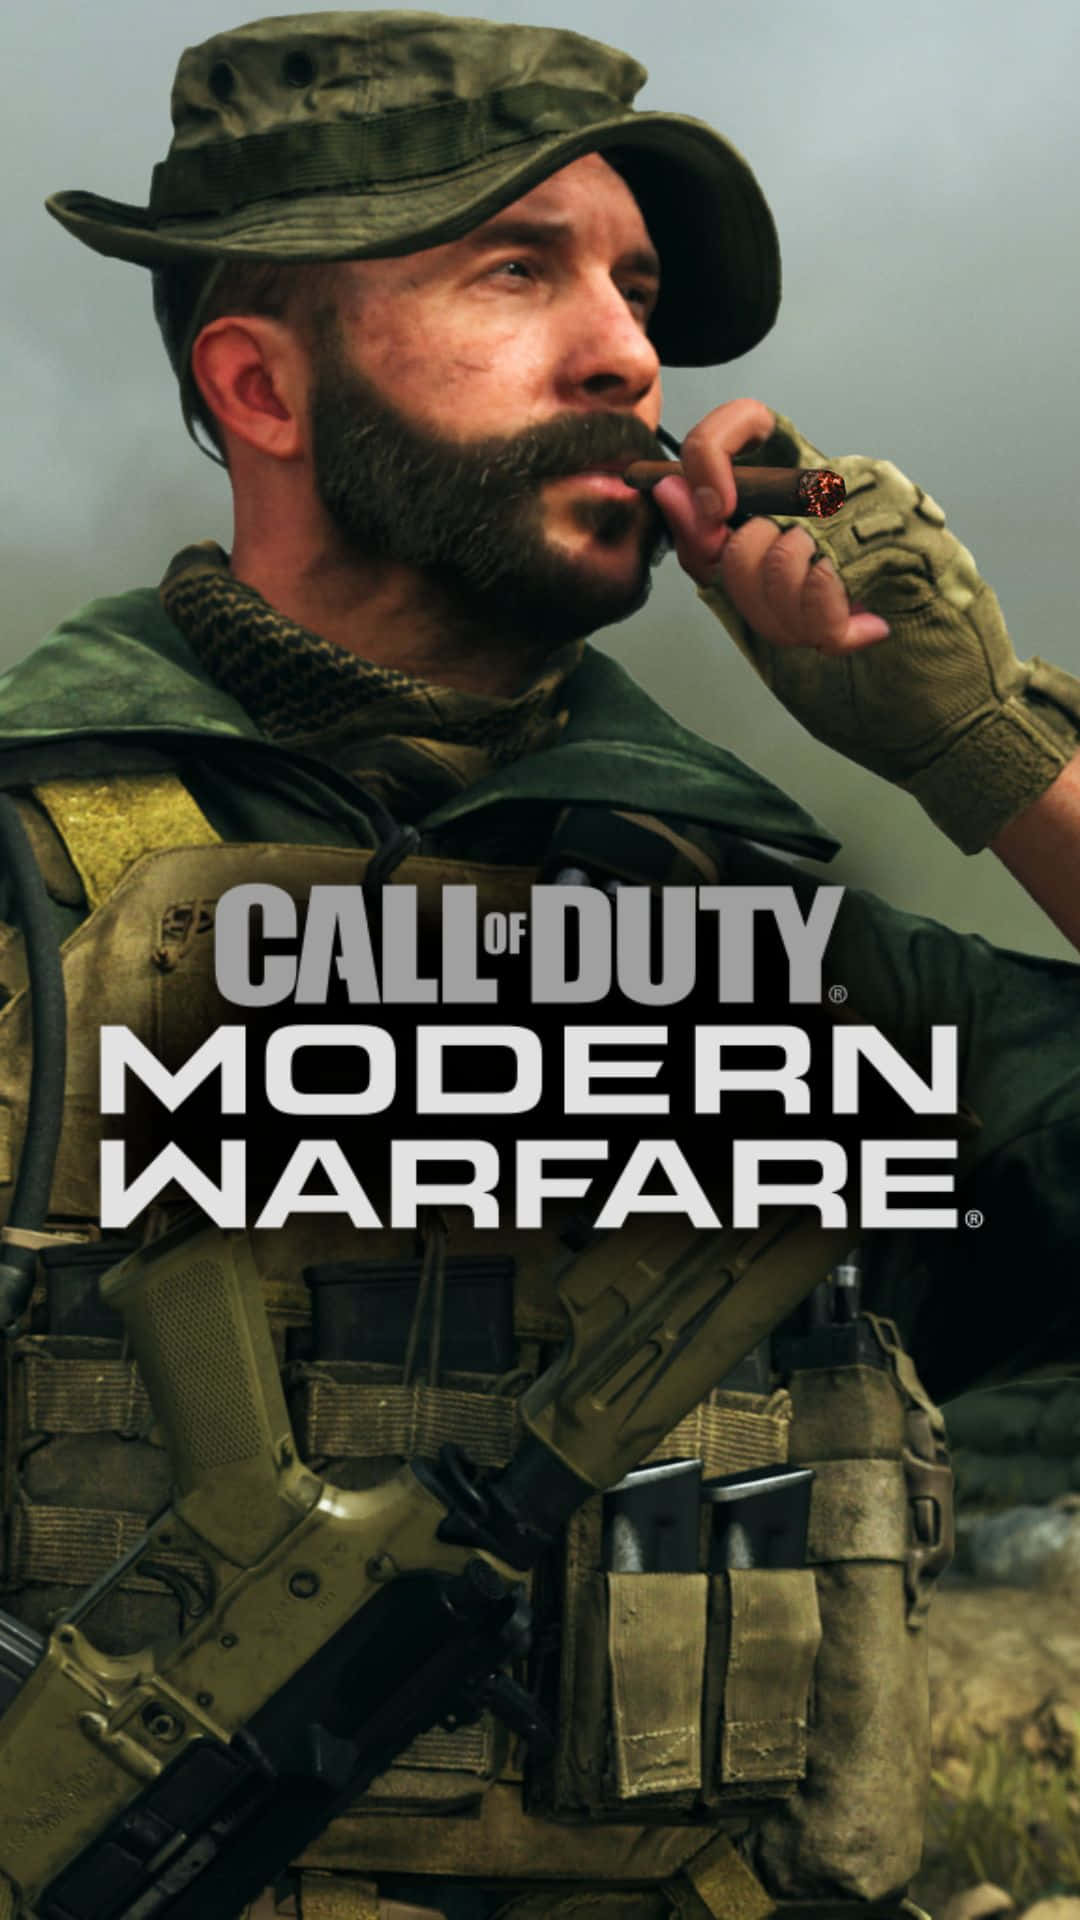 Intensaazione Di Call Of Duty: Modern Warfare Su Android